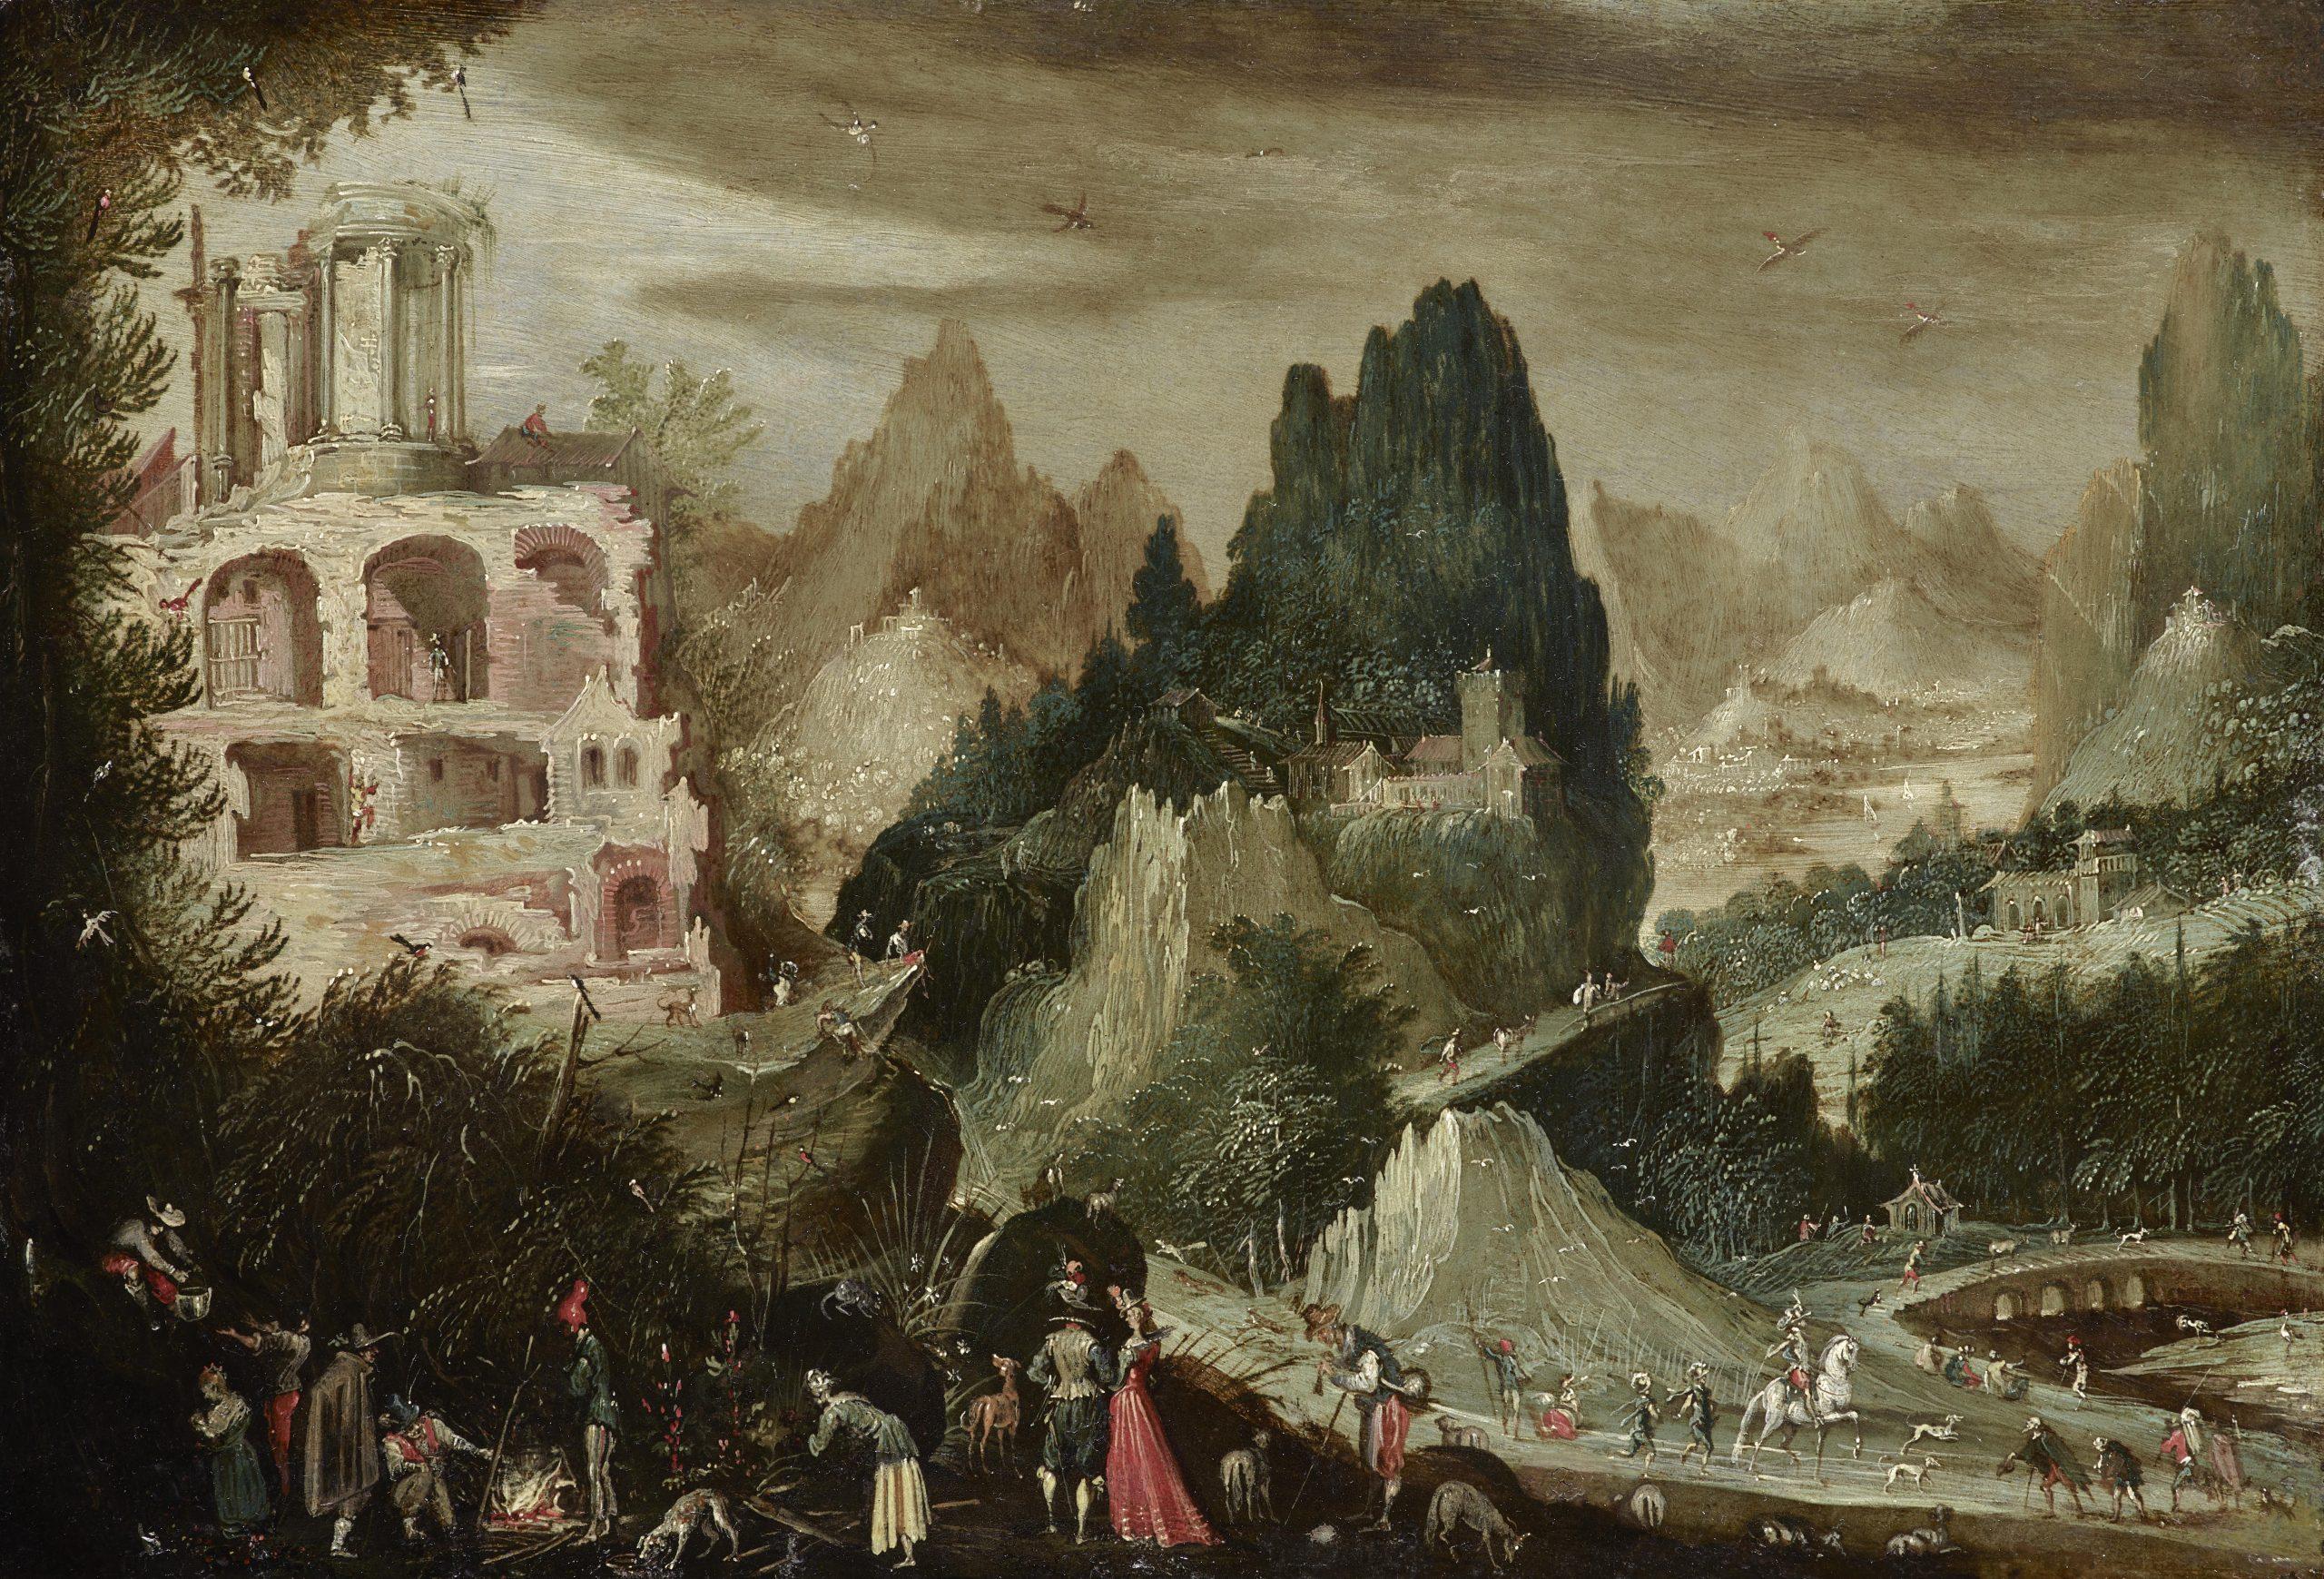 Landscape Painting Flemish School, 17th Century - Paysage avec ruines des chutes de Tivoli